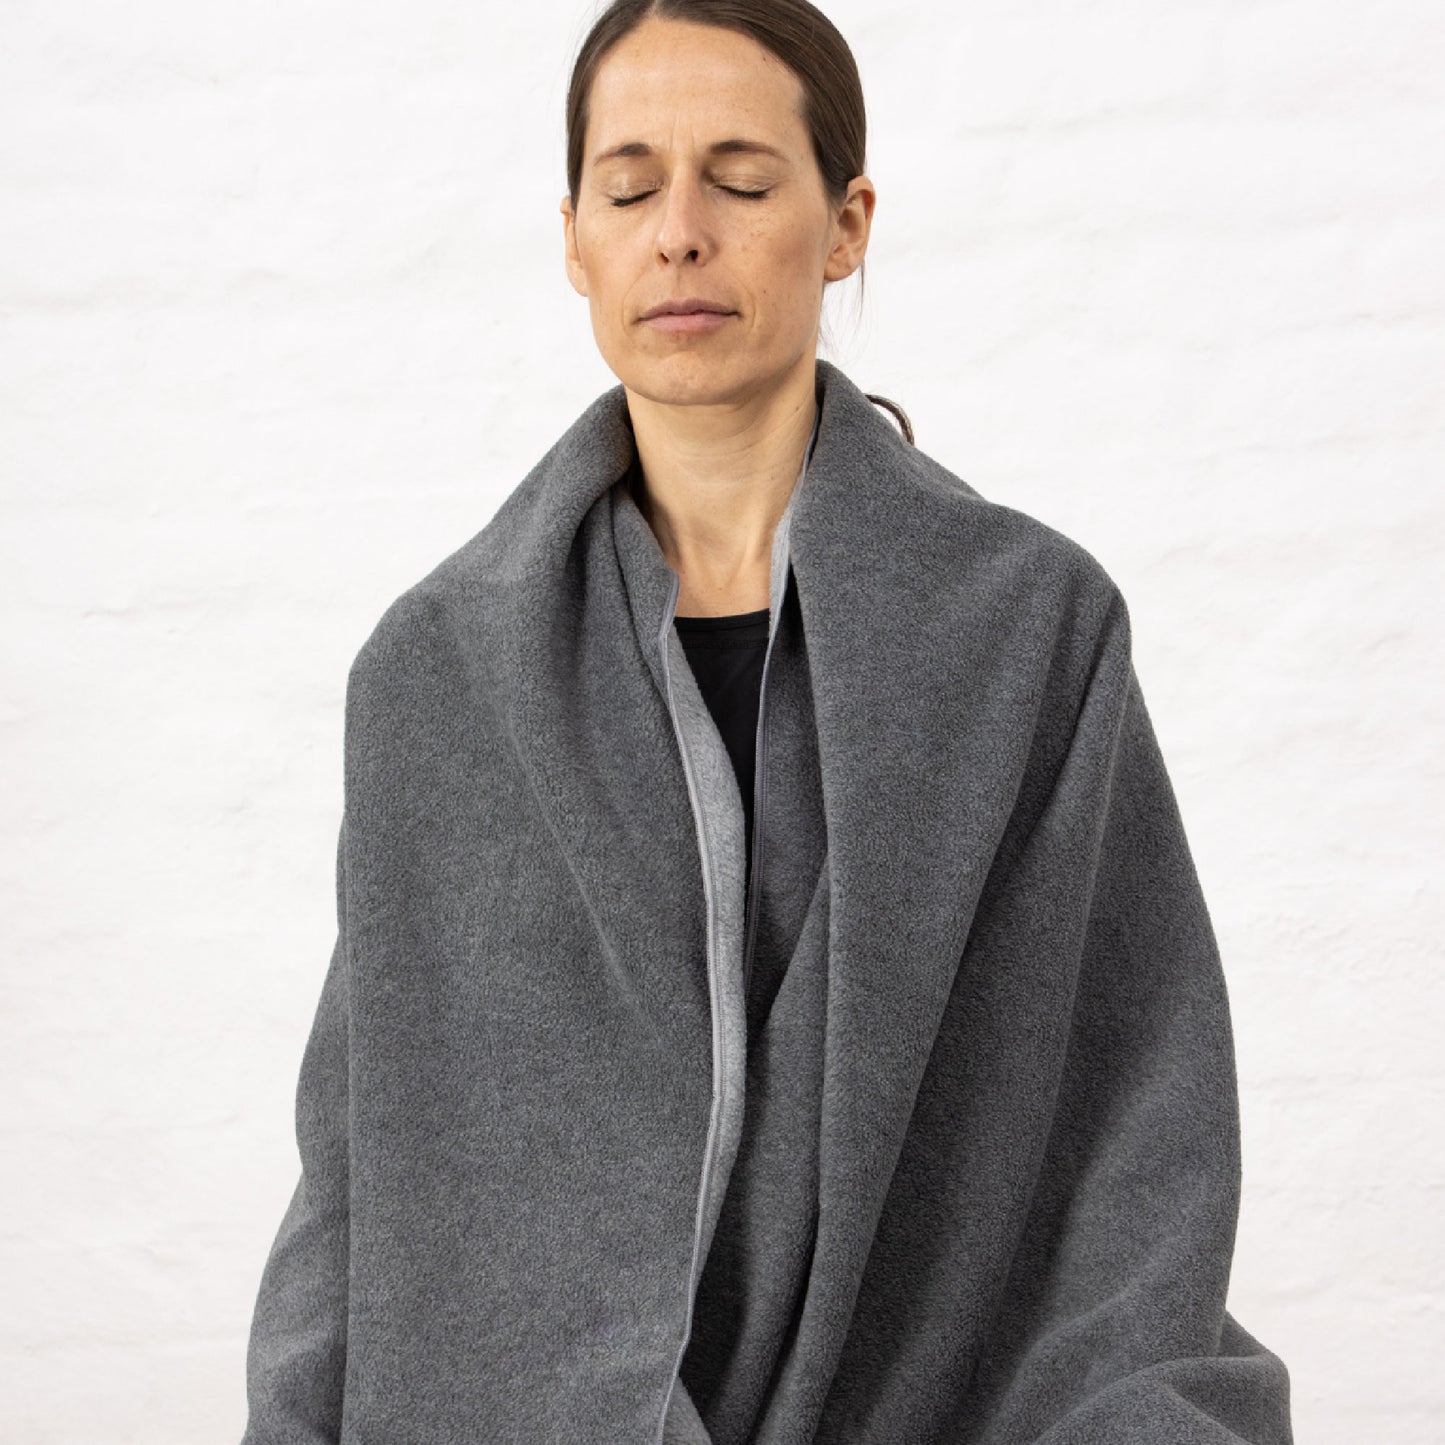 Fleece Yoga Blanket - Grey